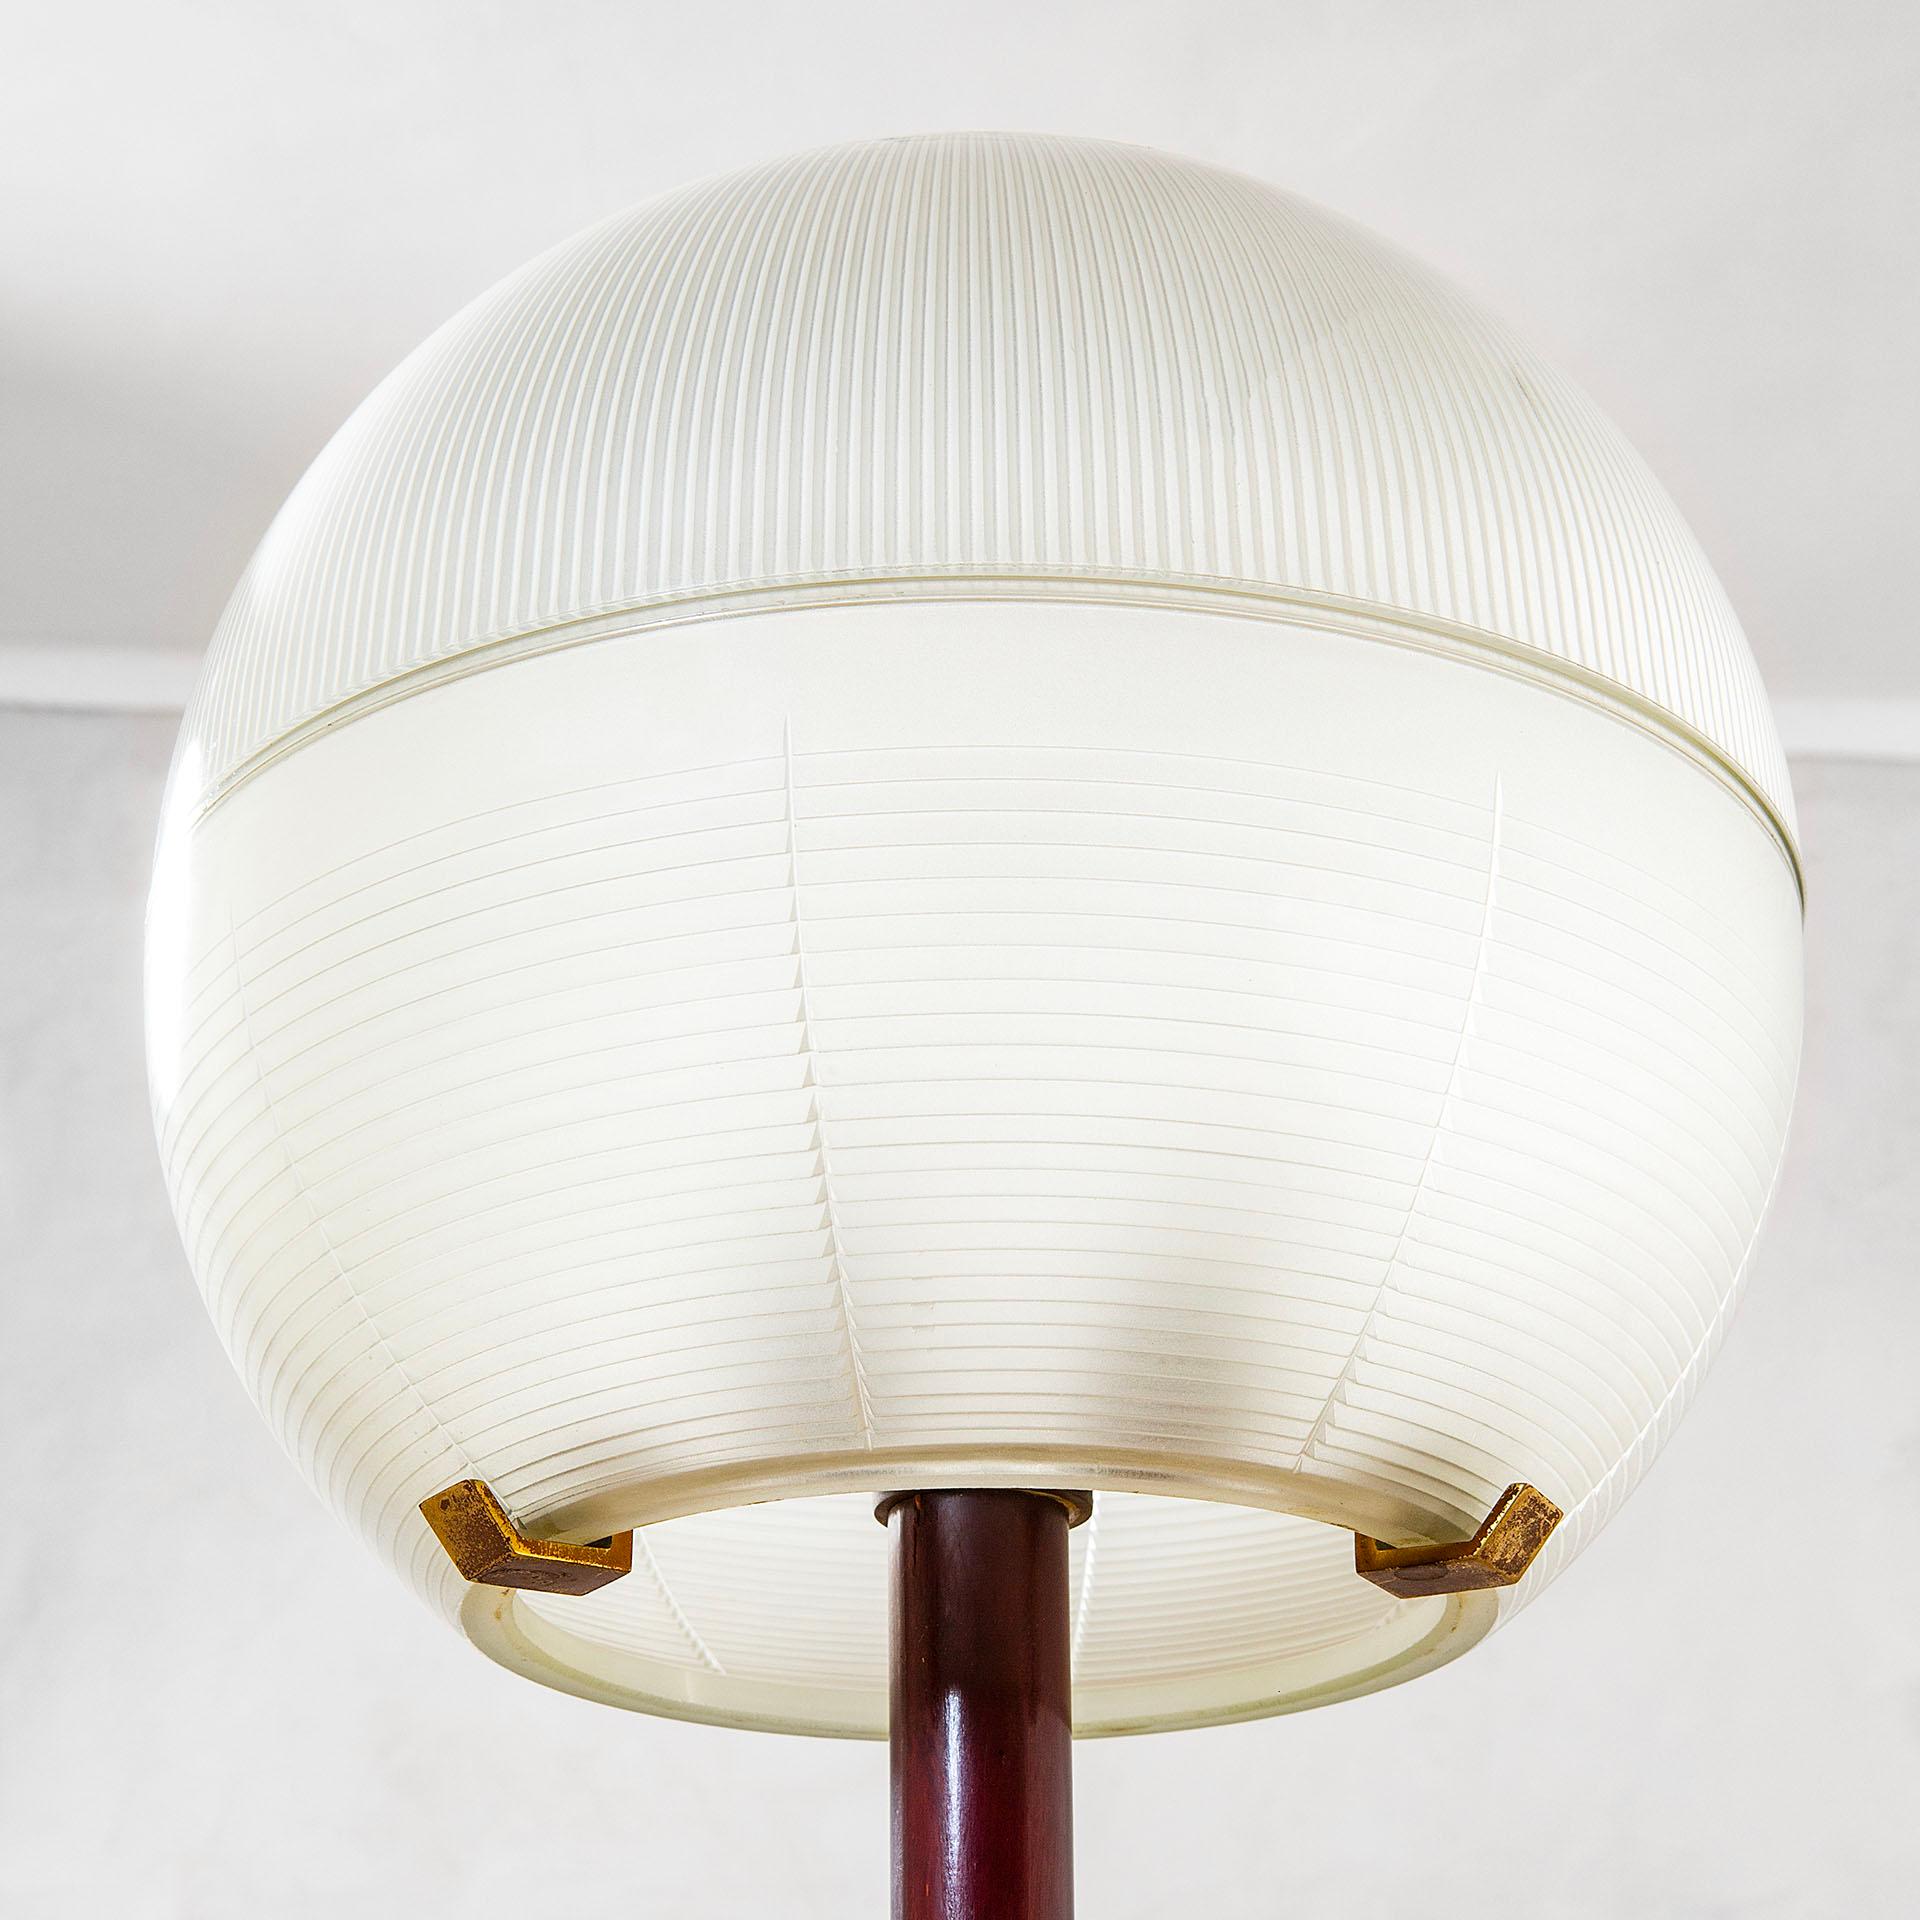 Italian 20th Century Ignazio Gardella Floor Lamp Mod. Lte8 for Azucena, 50s For Sale